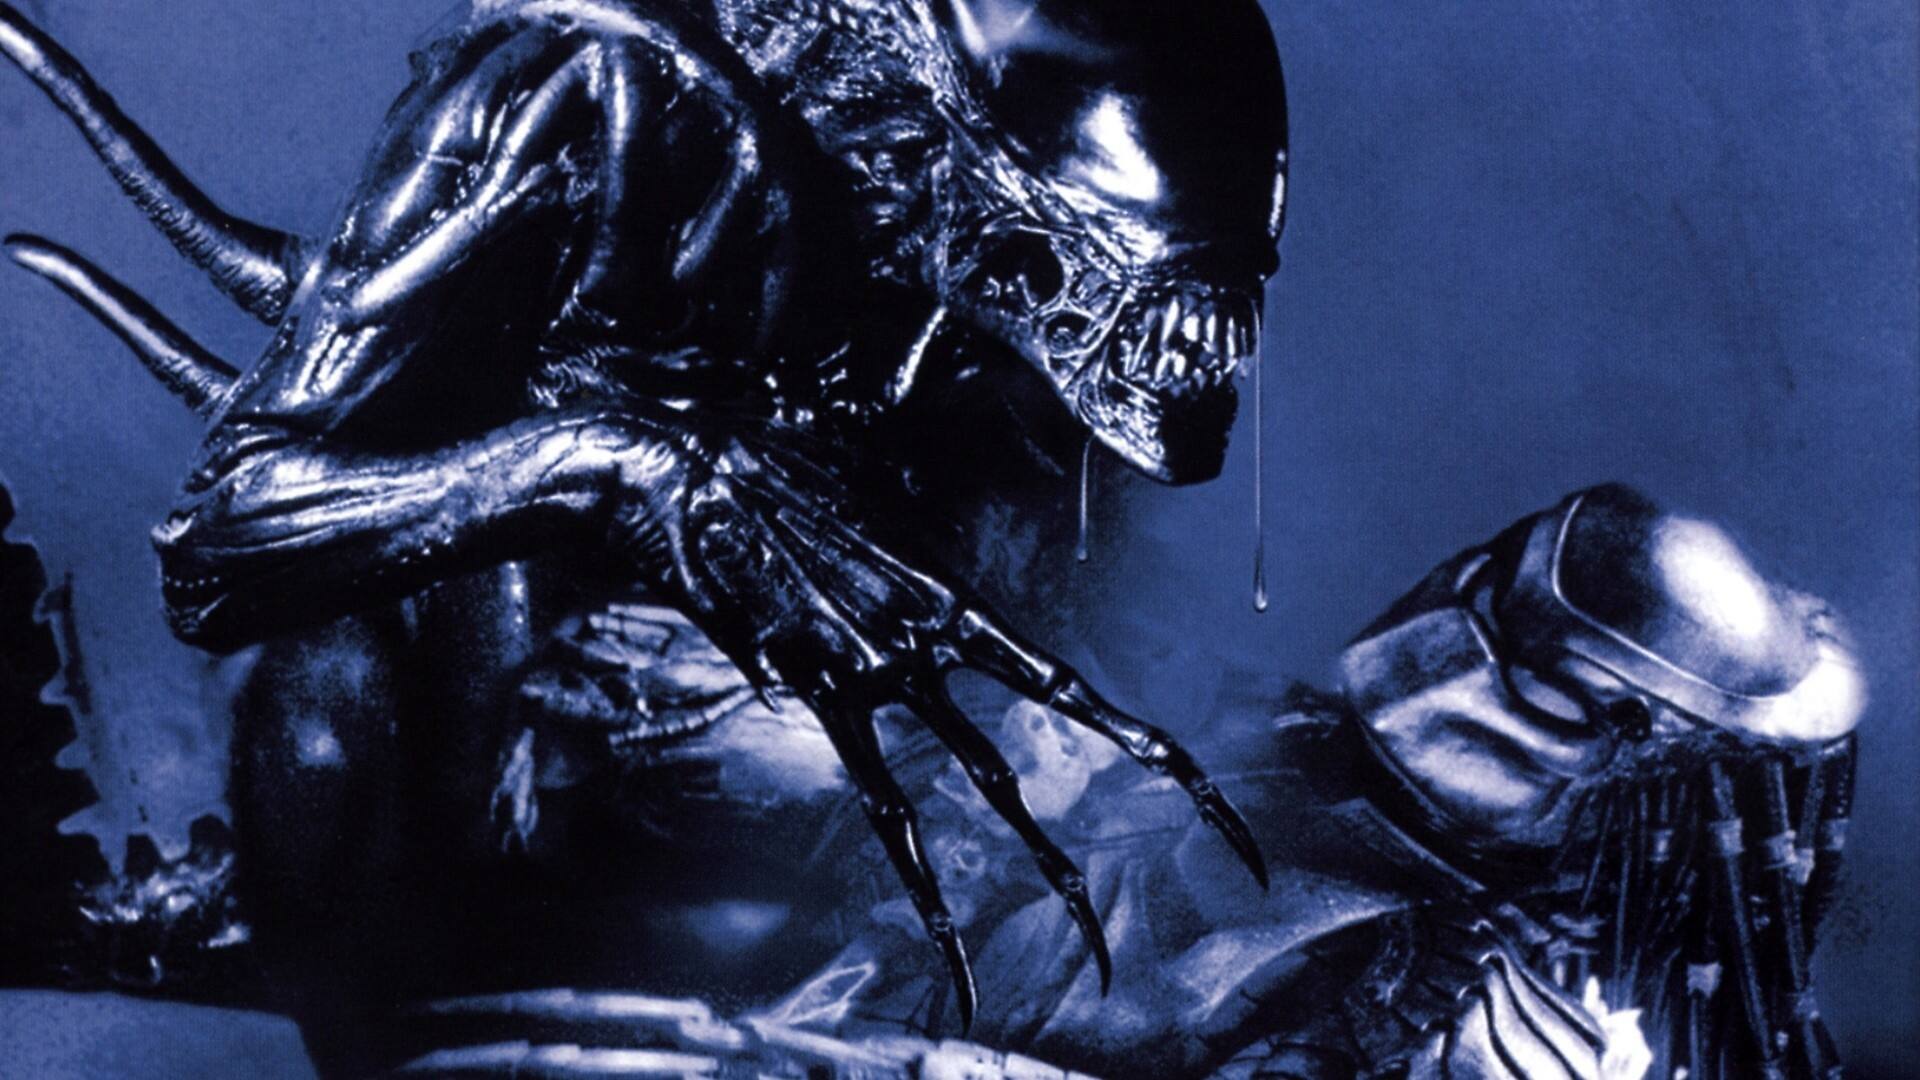 download film alien vs predator 2004